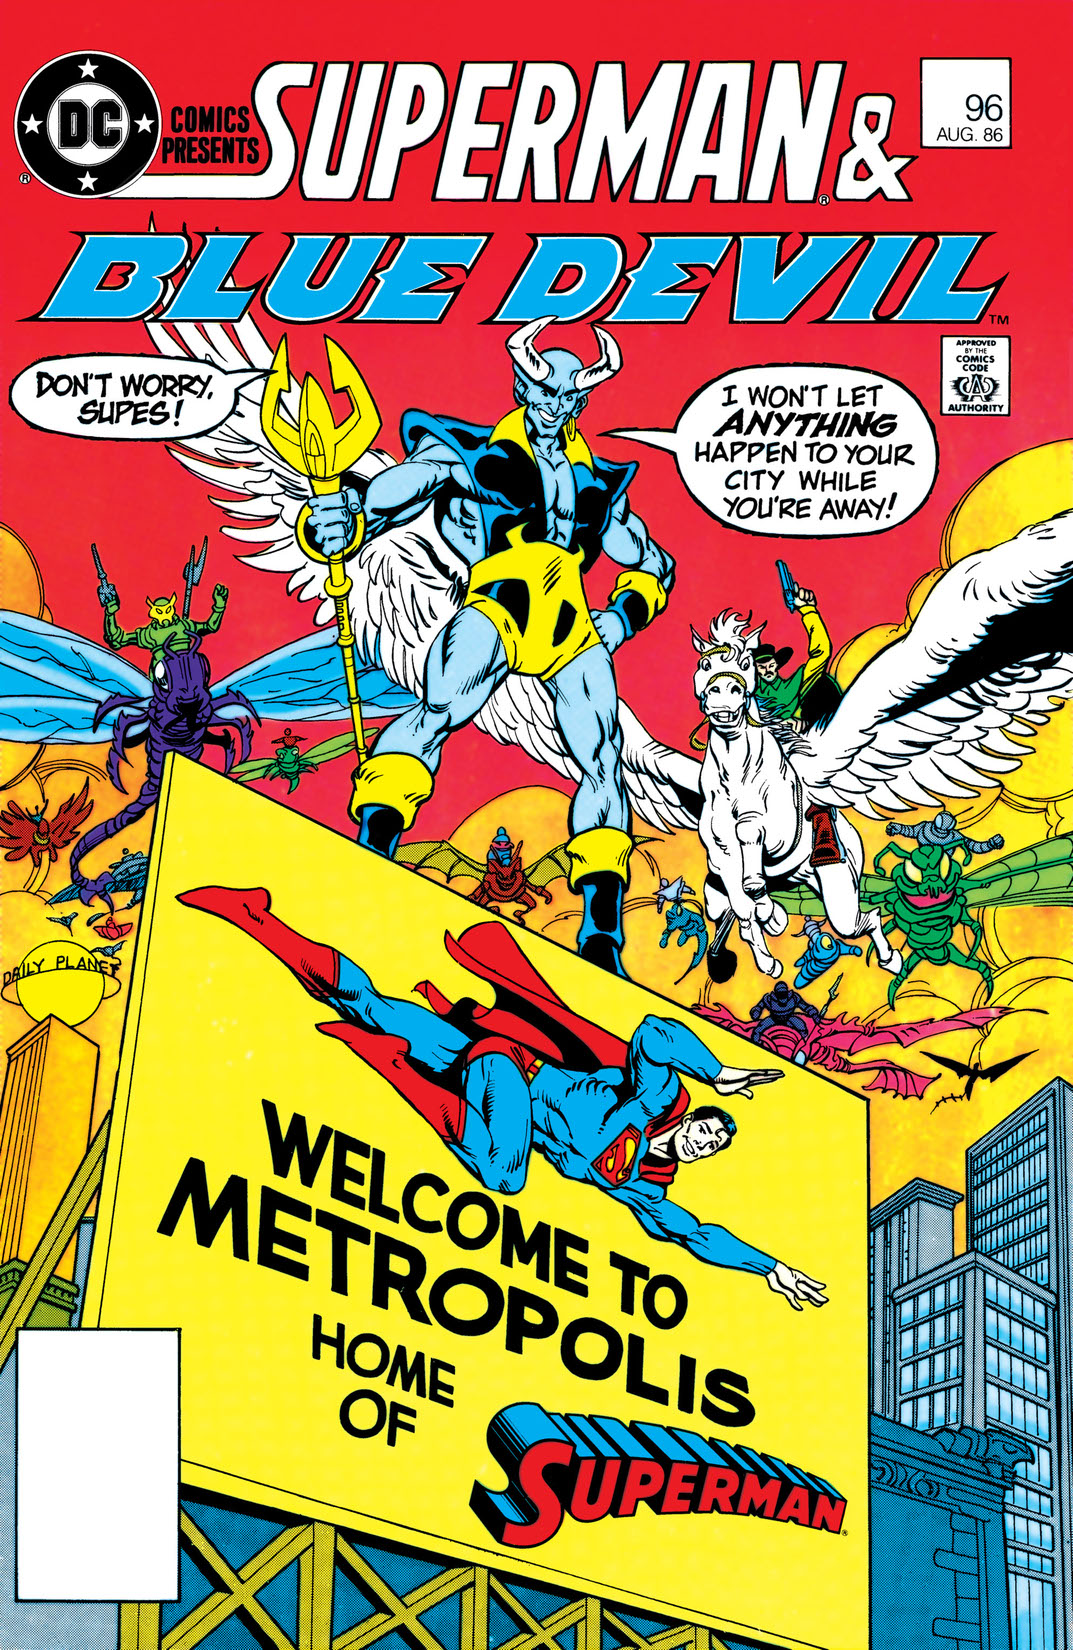 DC Comics Presents (1978-1986) #96 preview images